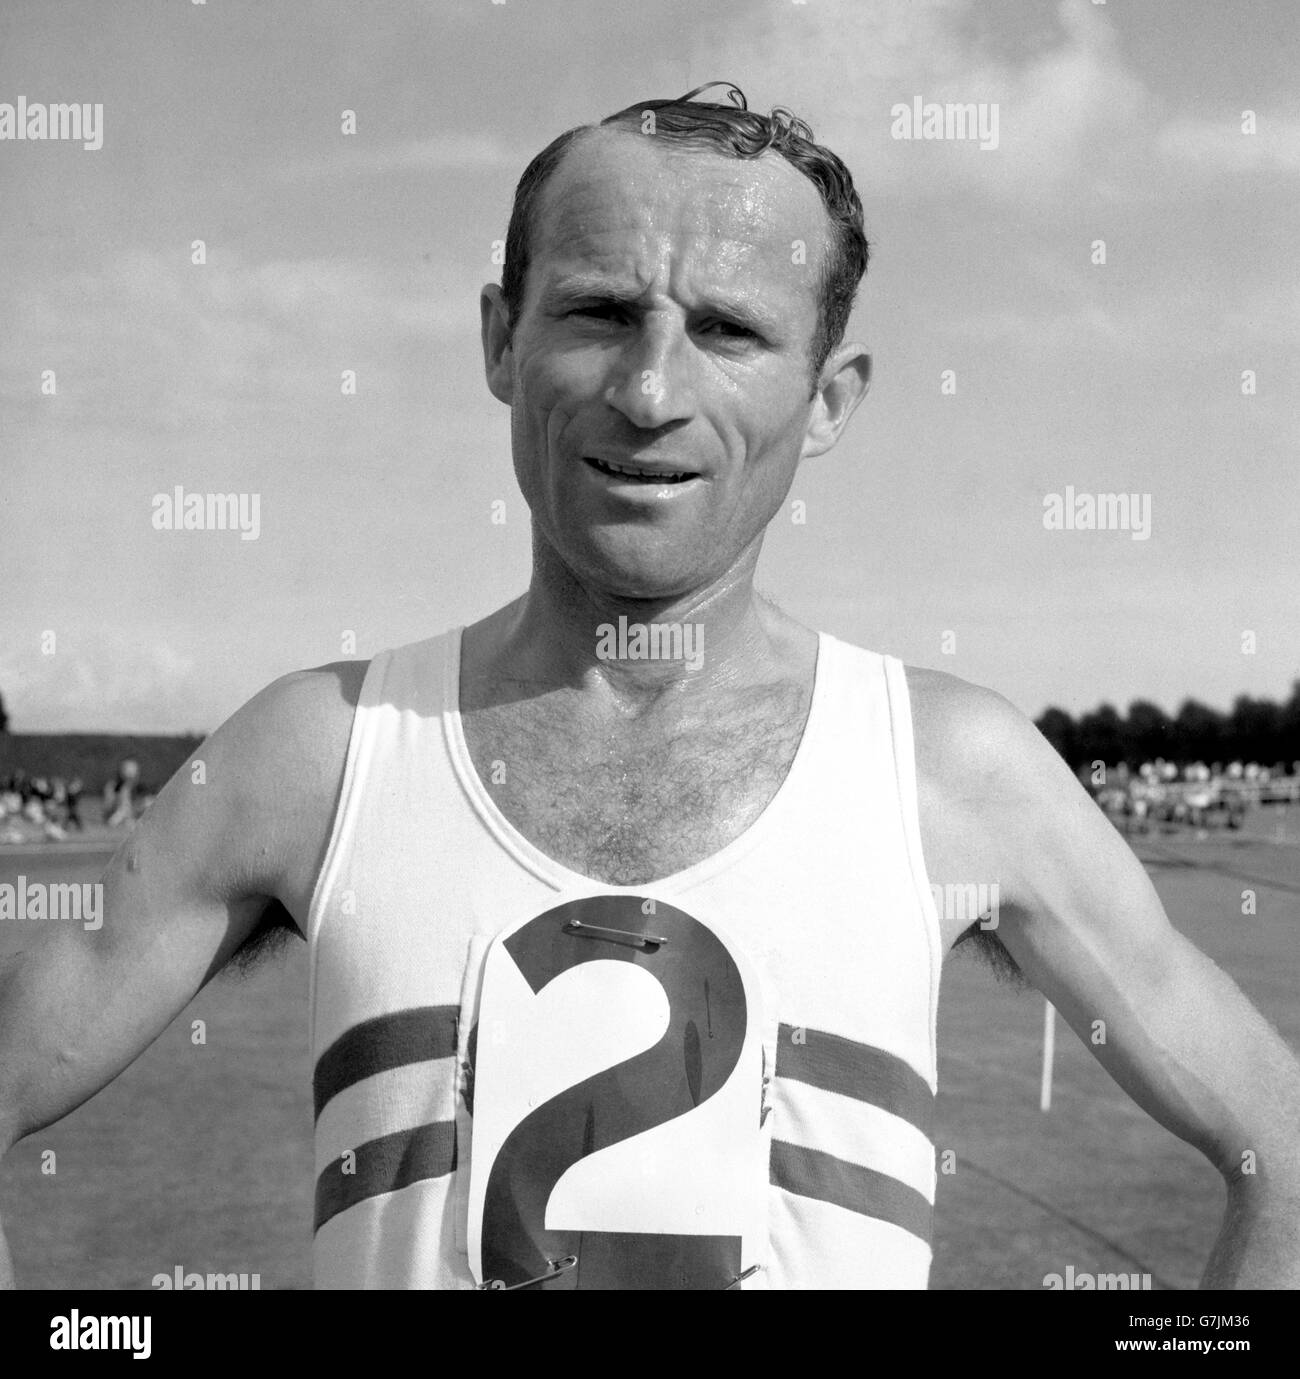 Athletics - British Olympic team v Rest - Portsmouth. Jim Hogan at Portsmouth. Stock Photo